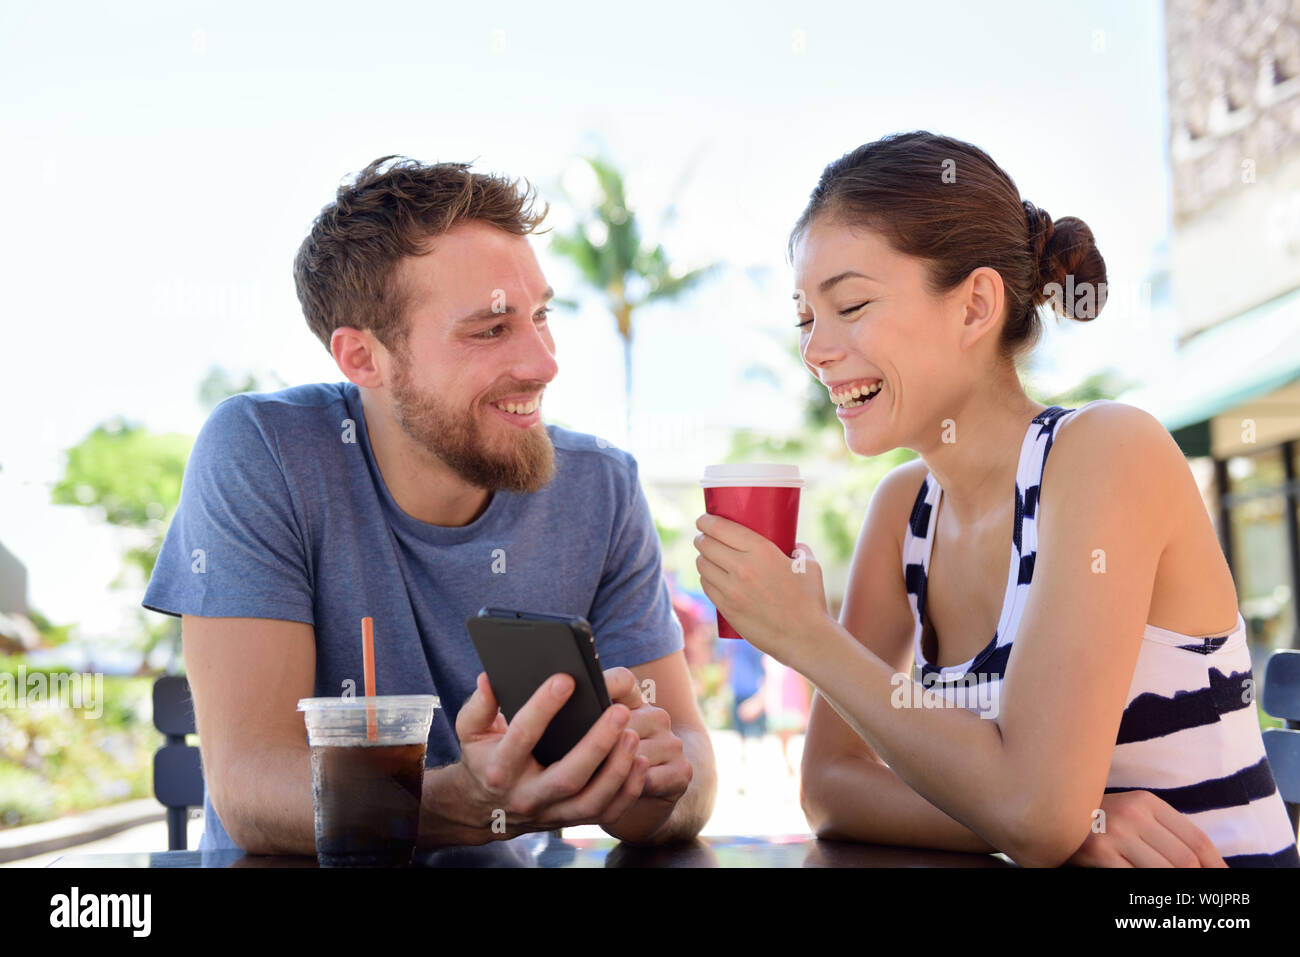 Paar auf Cafe an Smart Phone app Bilder Kaffee trinken im Sommer. Junge, urbane Menschen mit Smartphone lächelnd, glücklich zu Casual asiatische Frau sitzt im Freien. Freunde in späten 20s Stockfoto